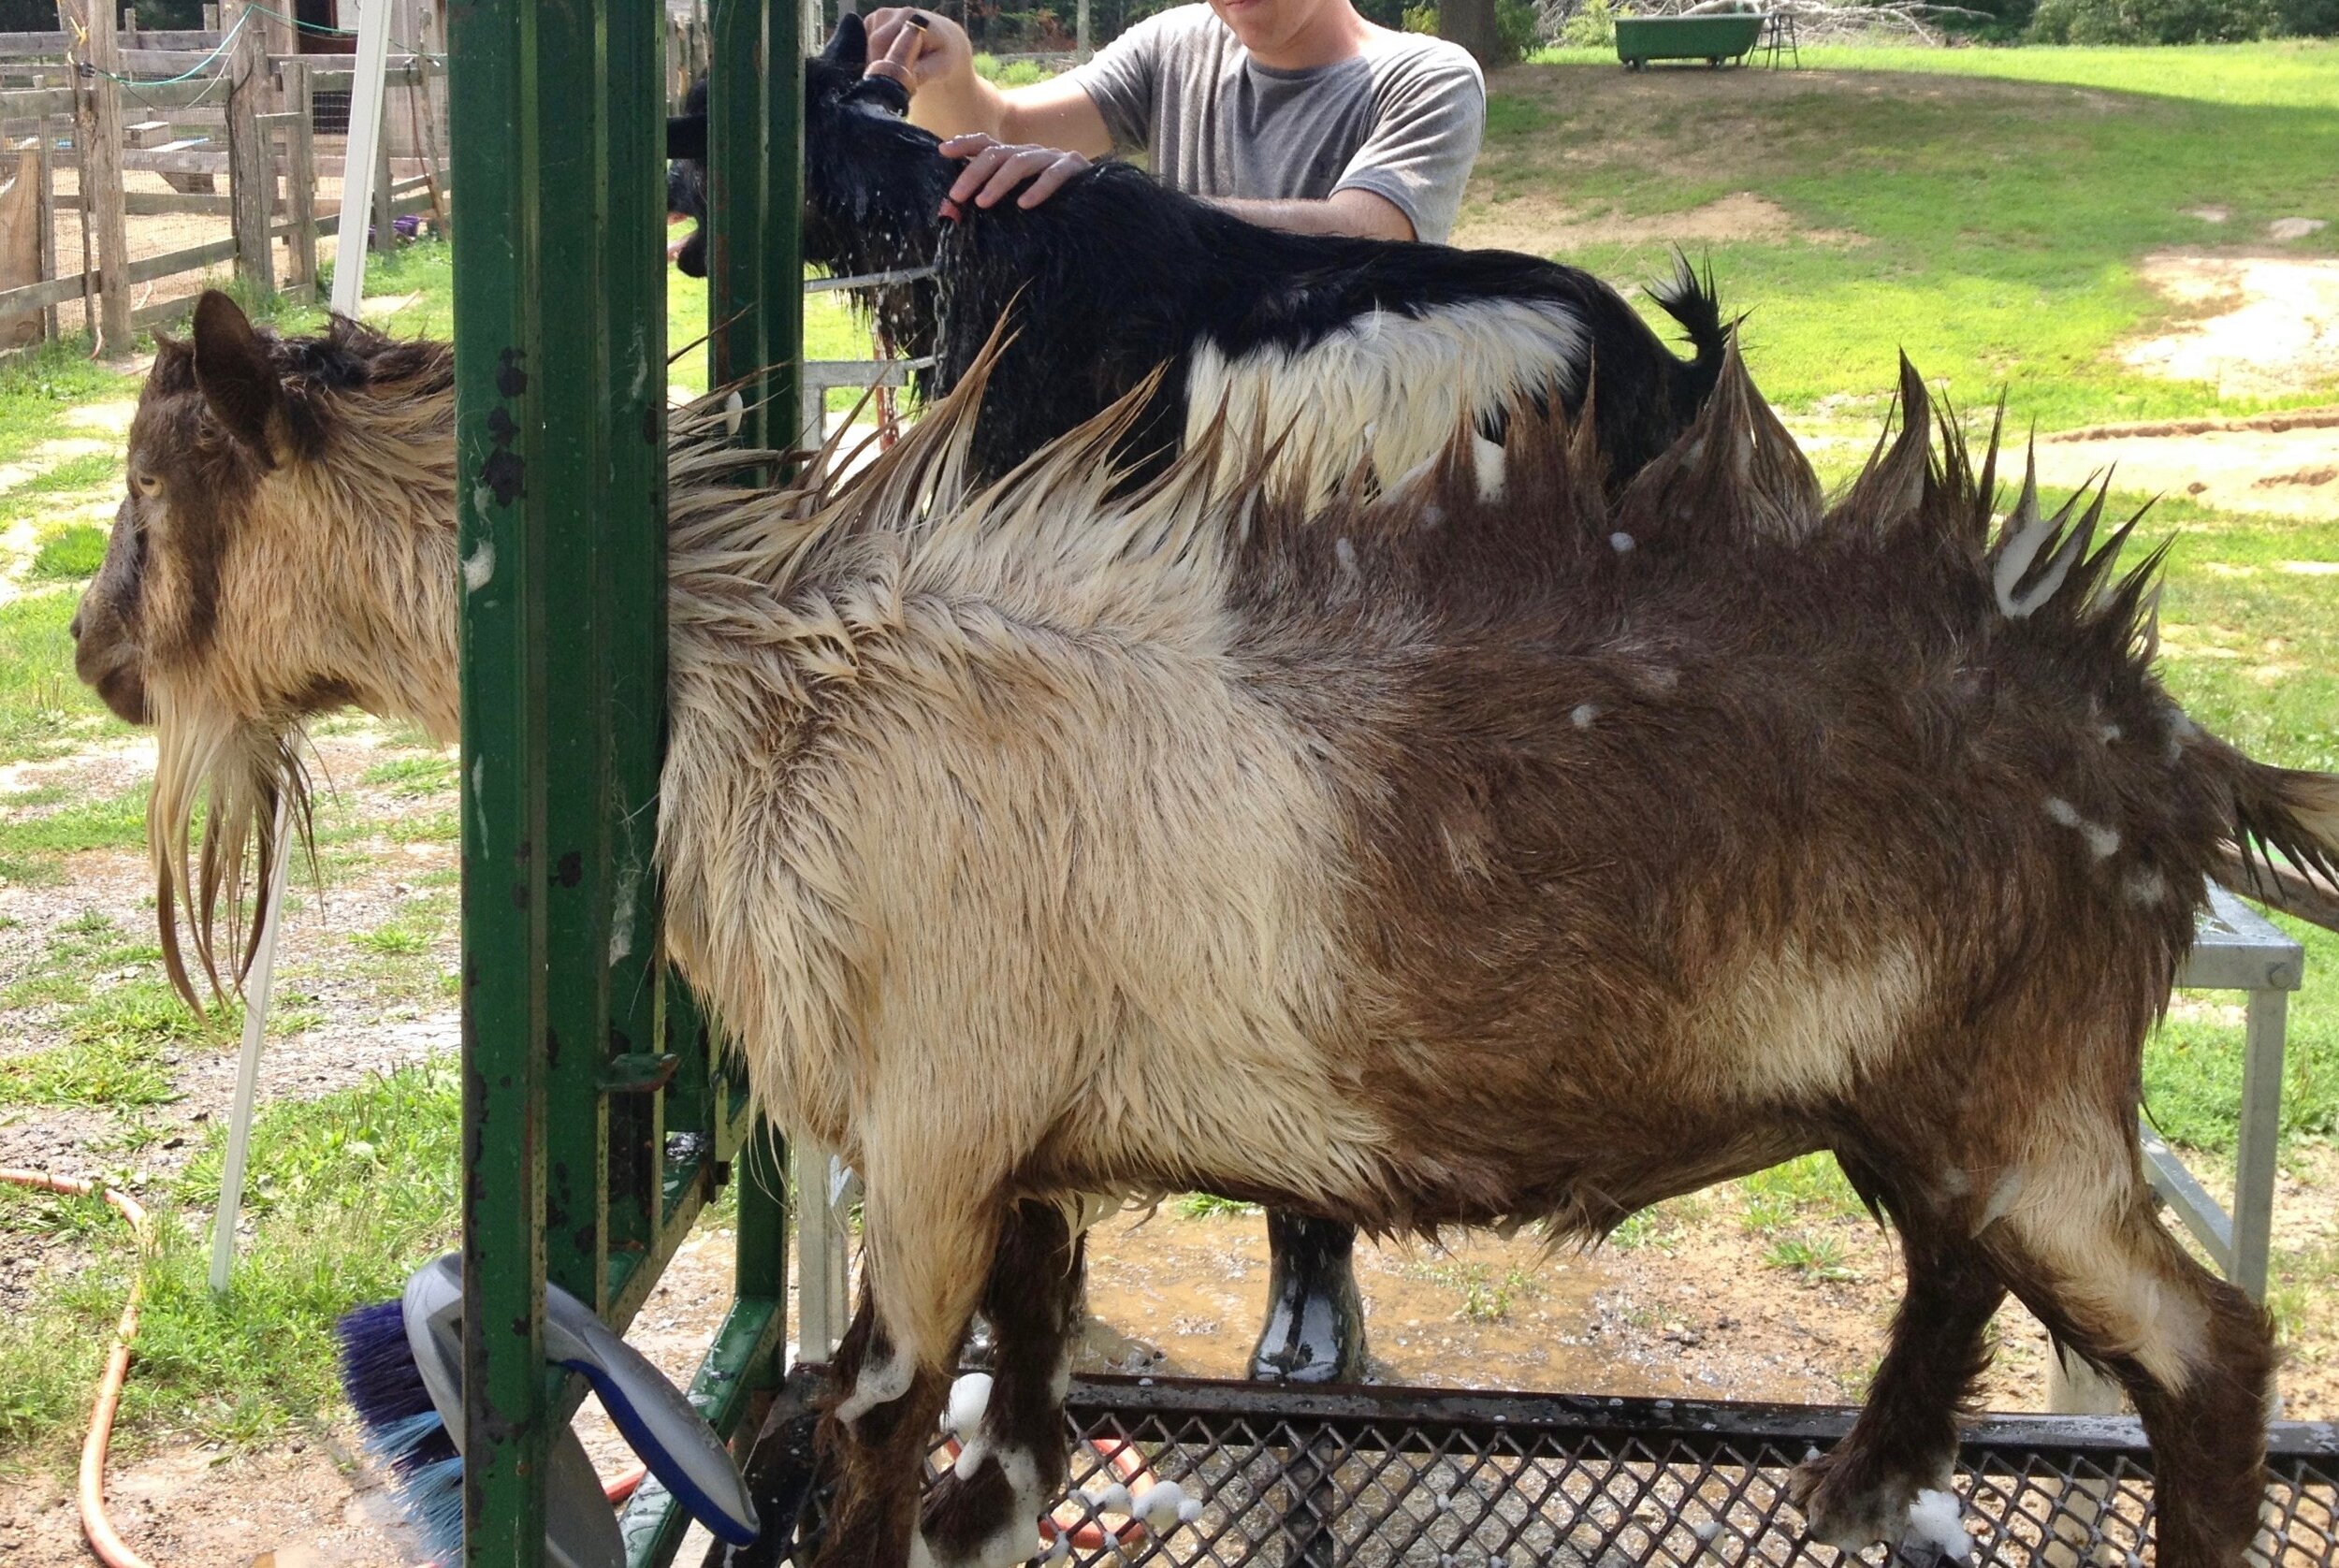 Tomo getting a bath - July 2015